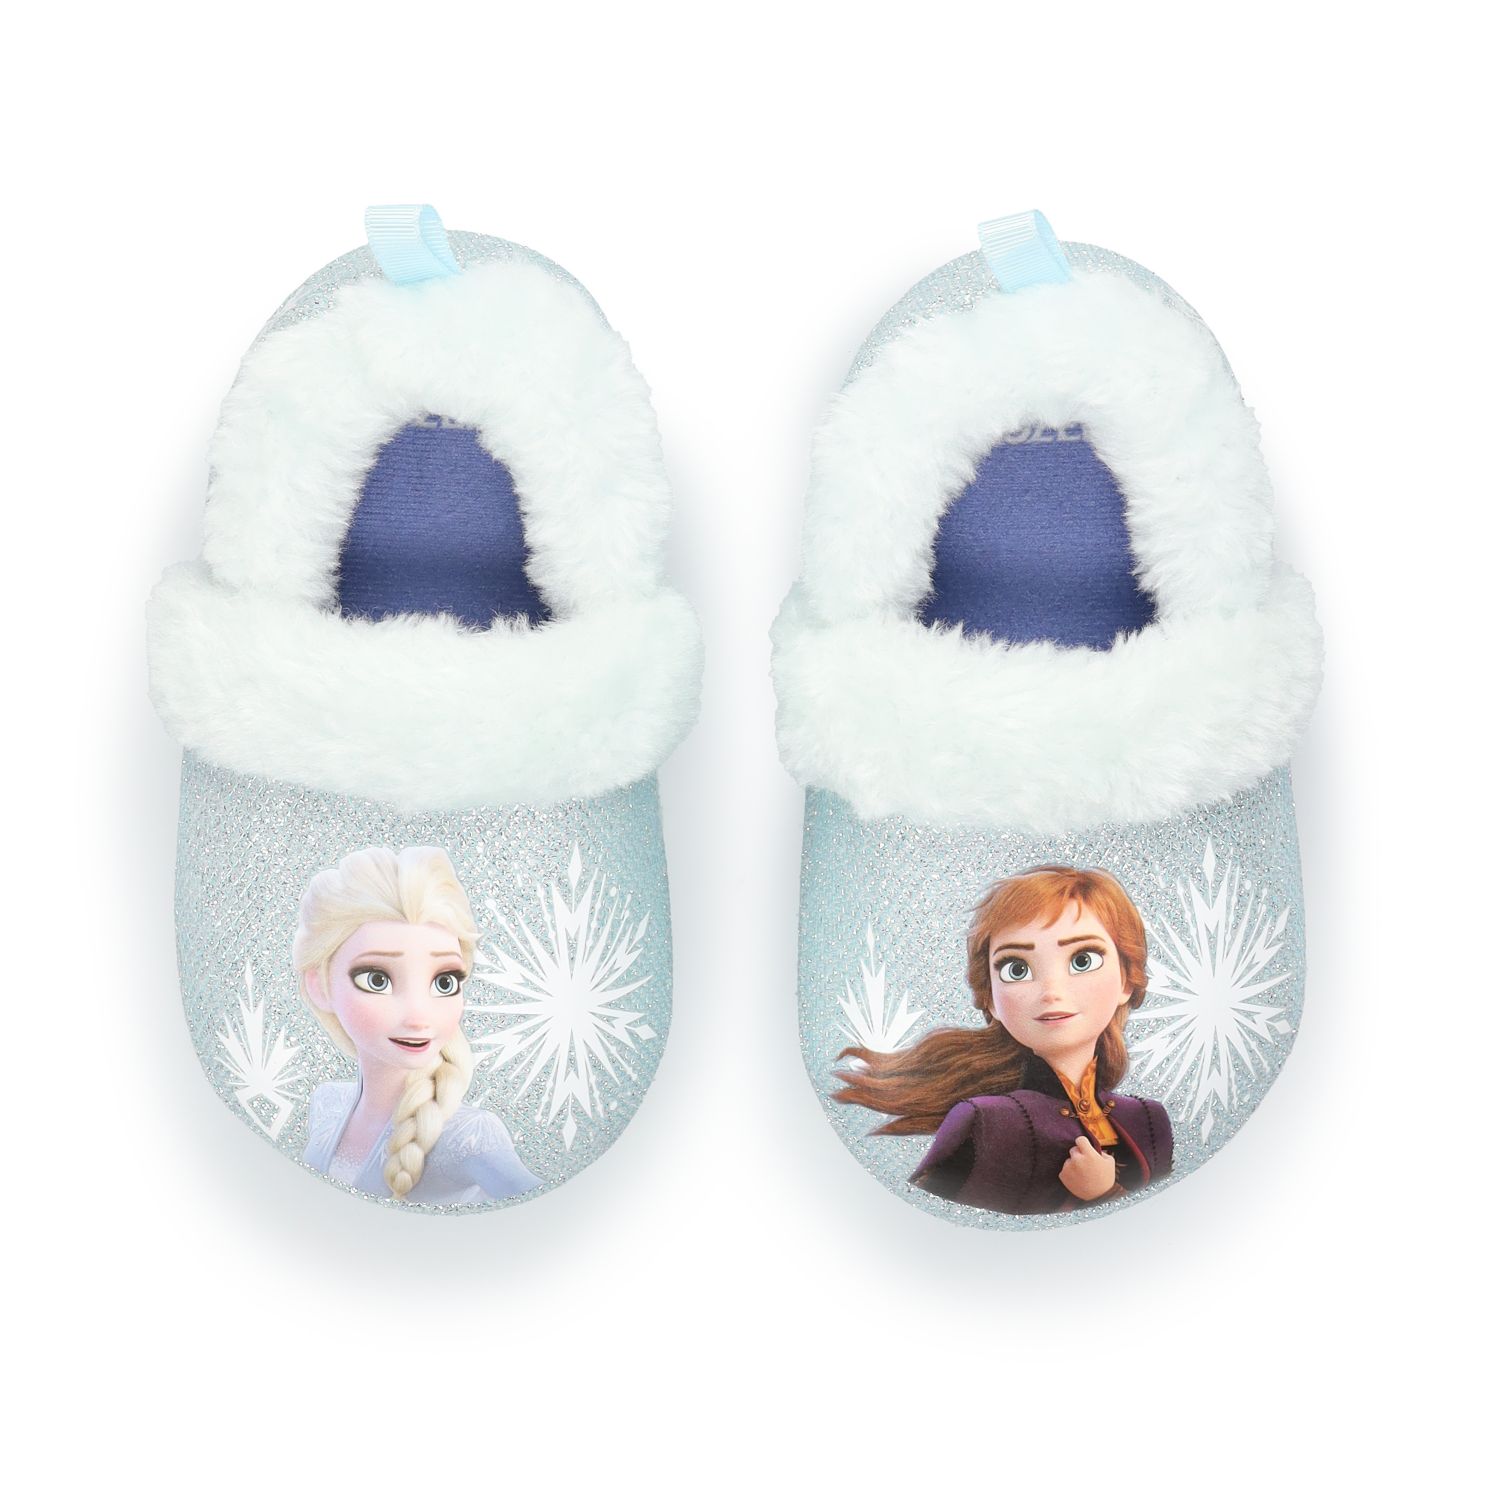 slippers for little kids